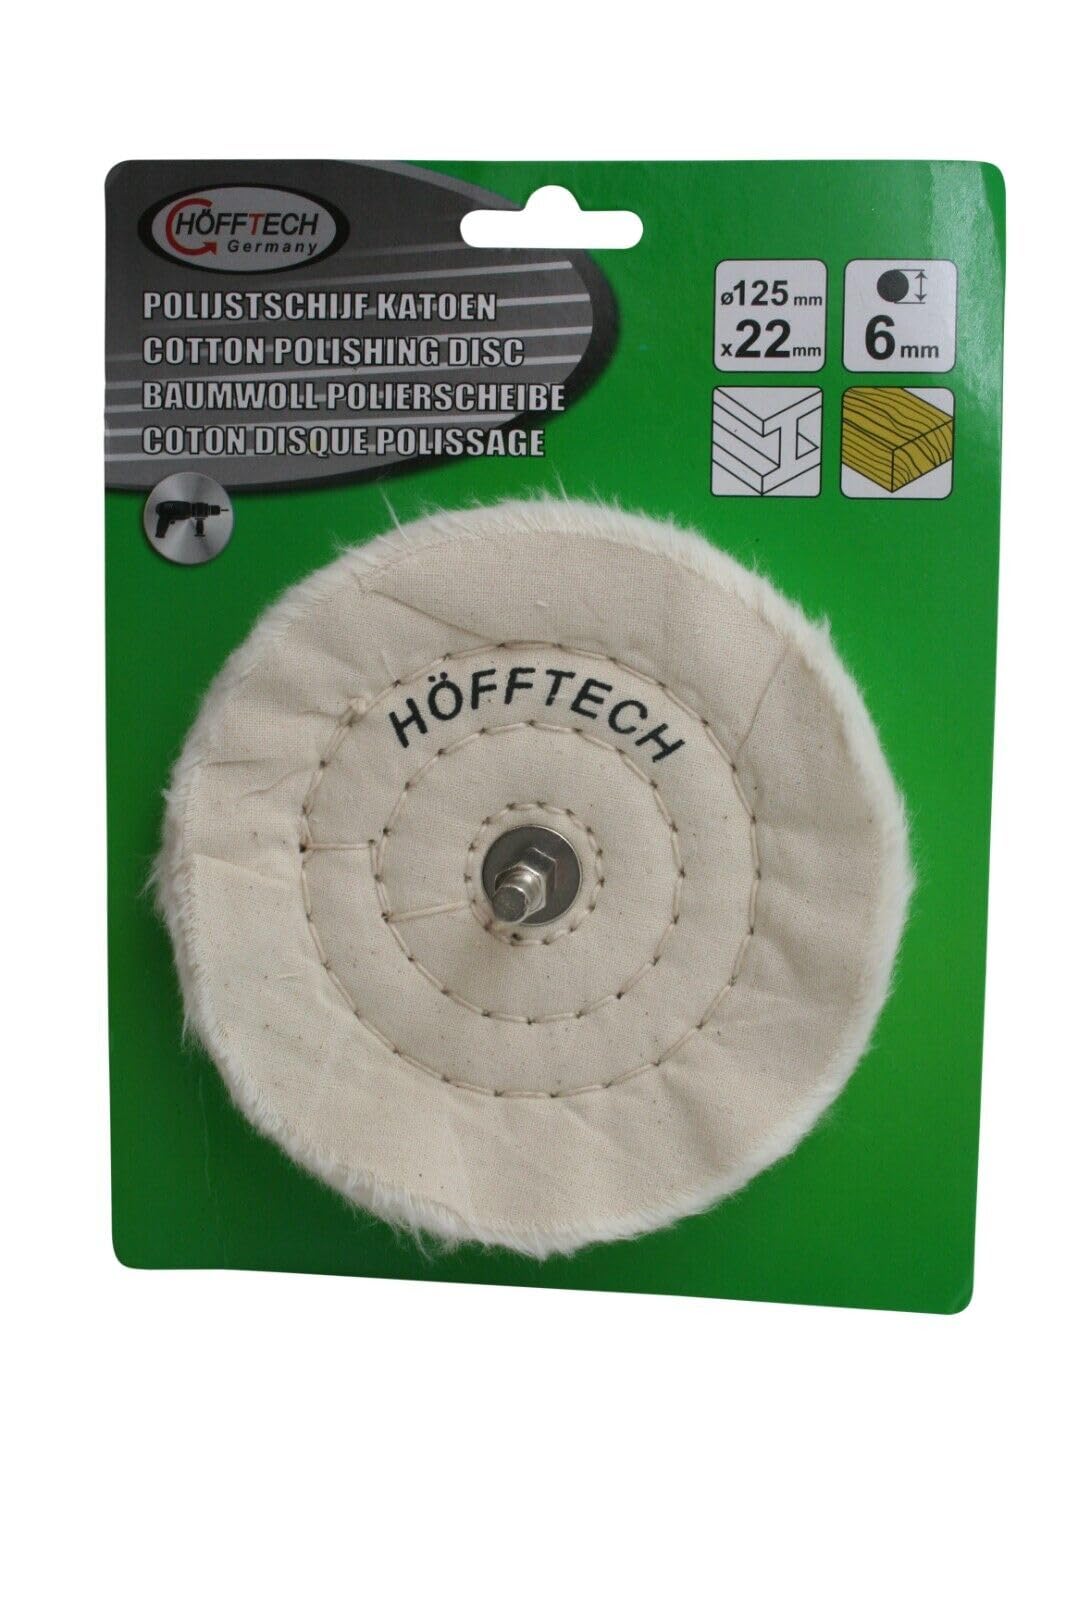 Höfftech 125mm Baumwolle Polierscheibe | Schwabbelscheibe | Polieren | Polierteller für Bohrmaschine von Höfftech